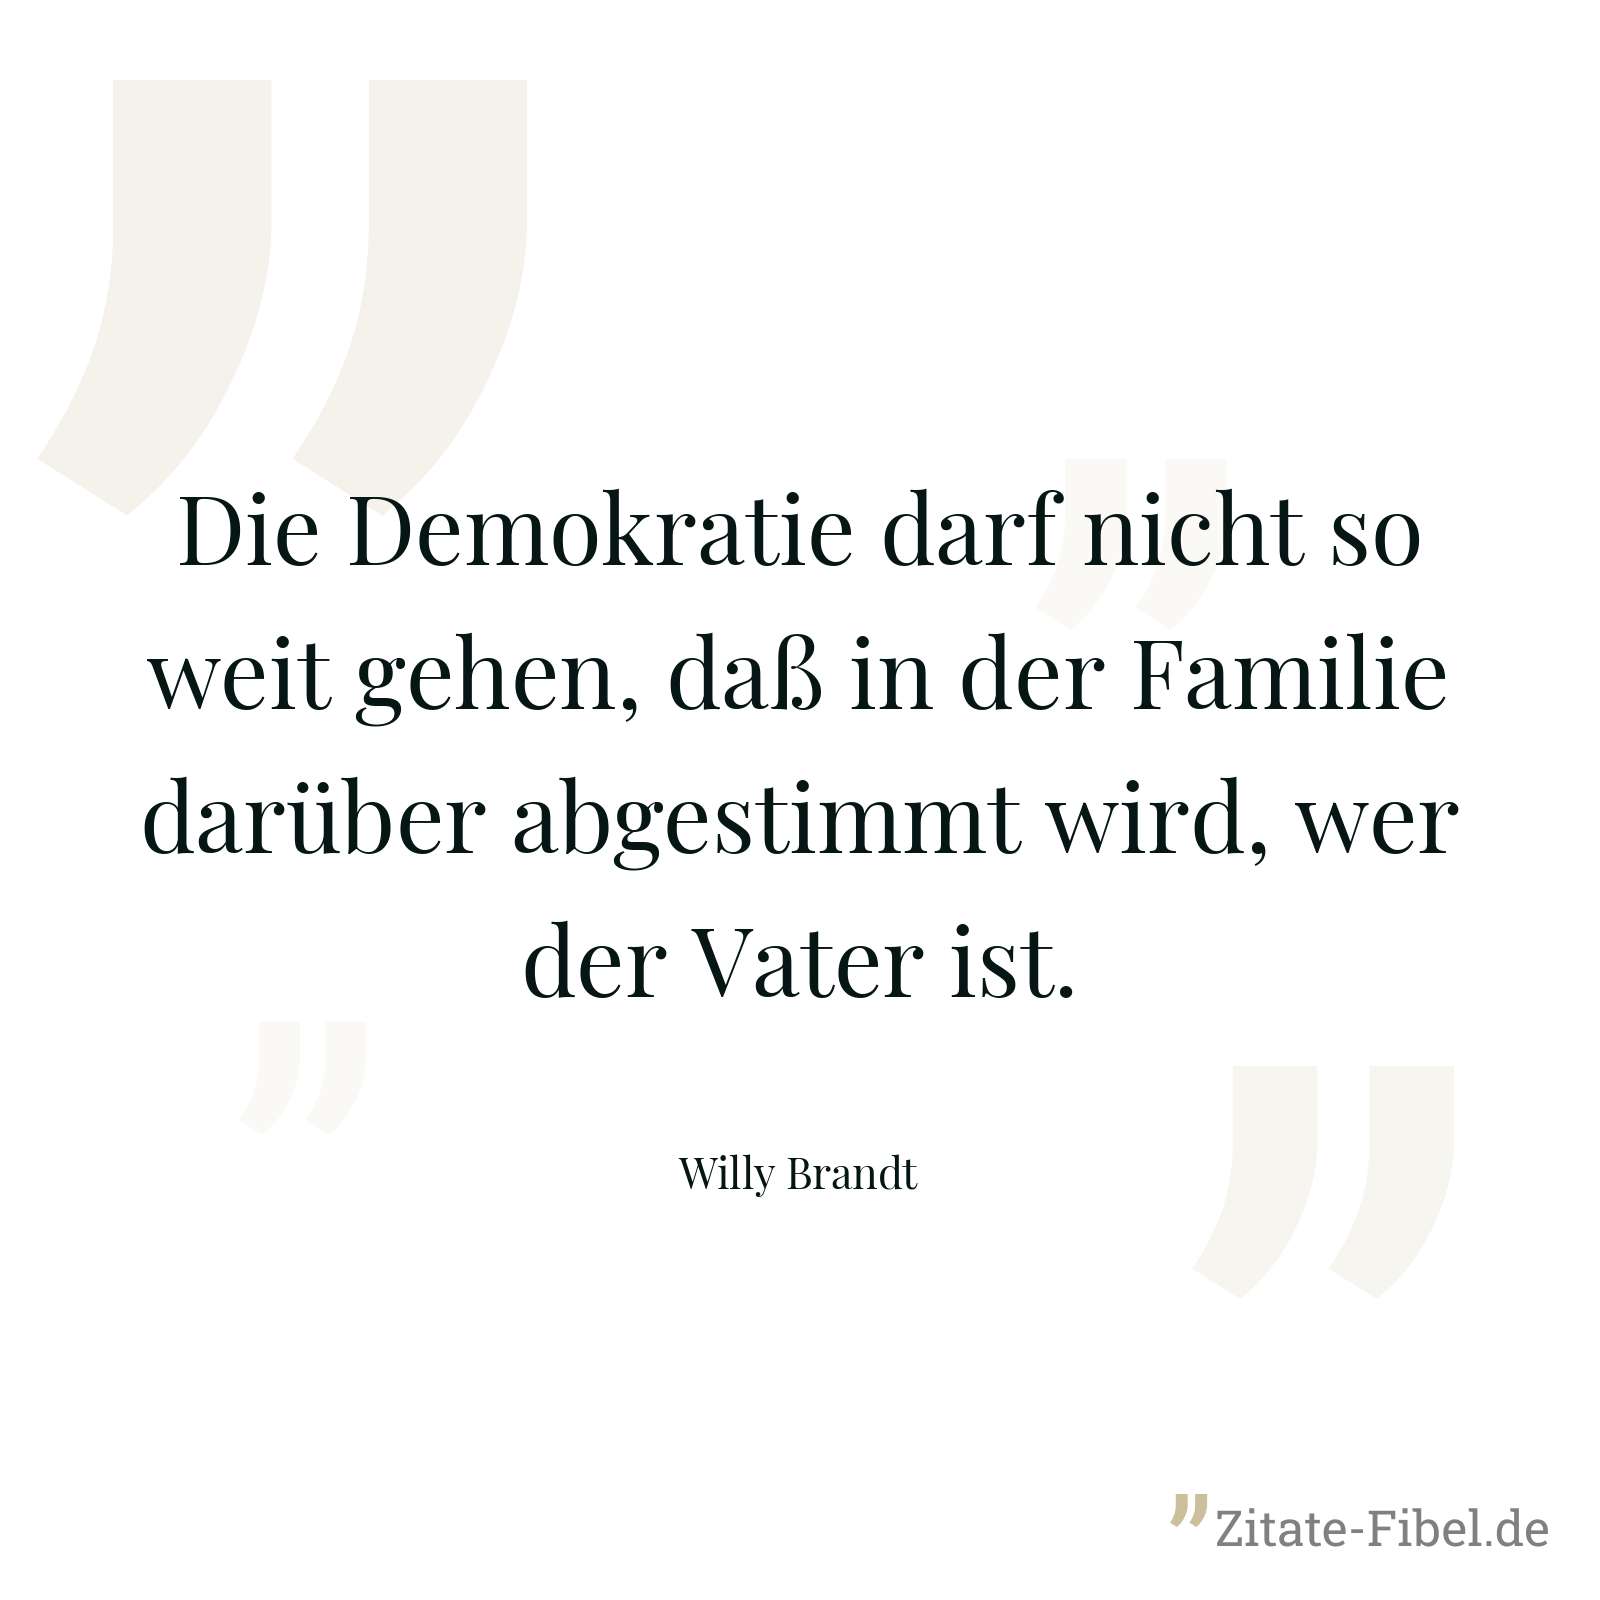 Die Demokratie darf nicht so weit gehen, daß in der Familie darüber abgestimmt wird, wer der Vater ist. - Willy Brandt